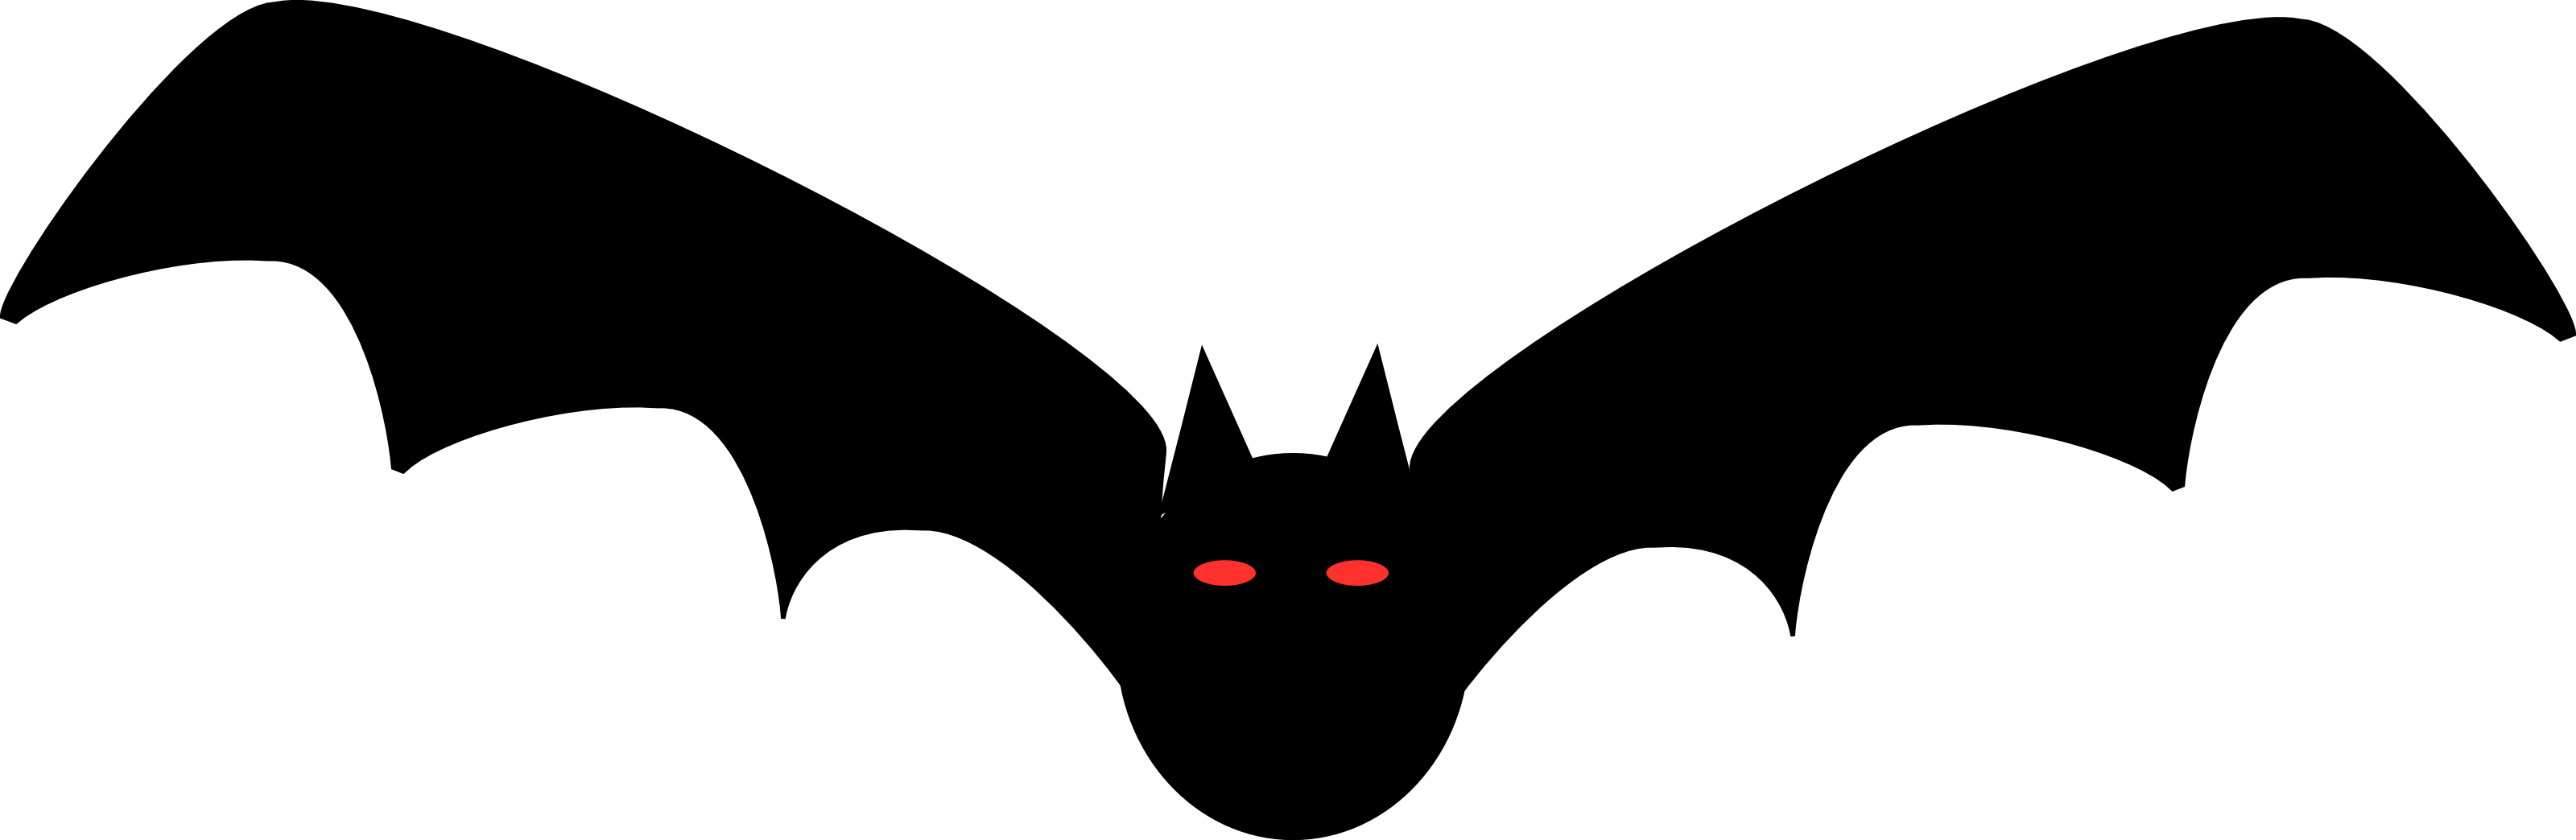 Bat Clip Art - Bat Images Clip Art